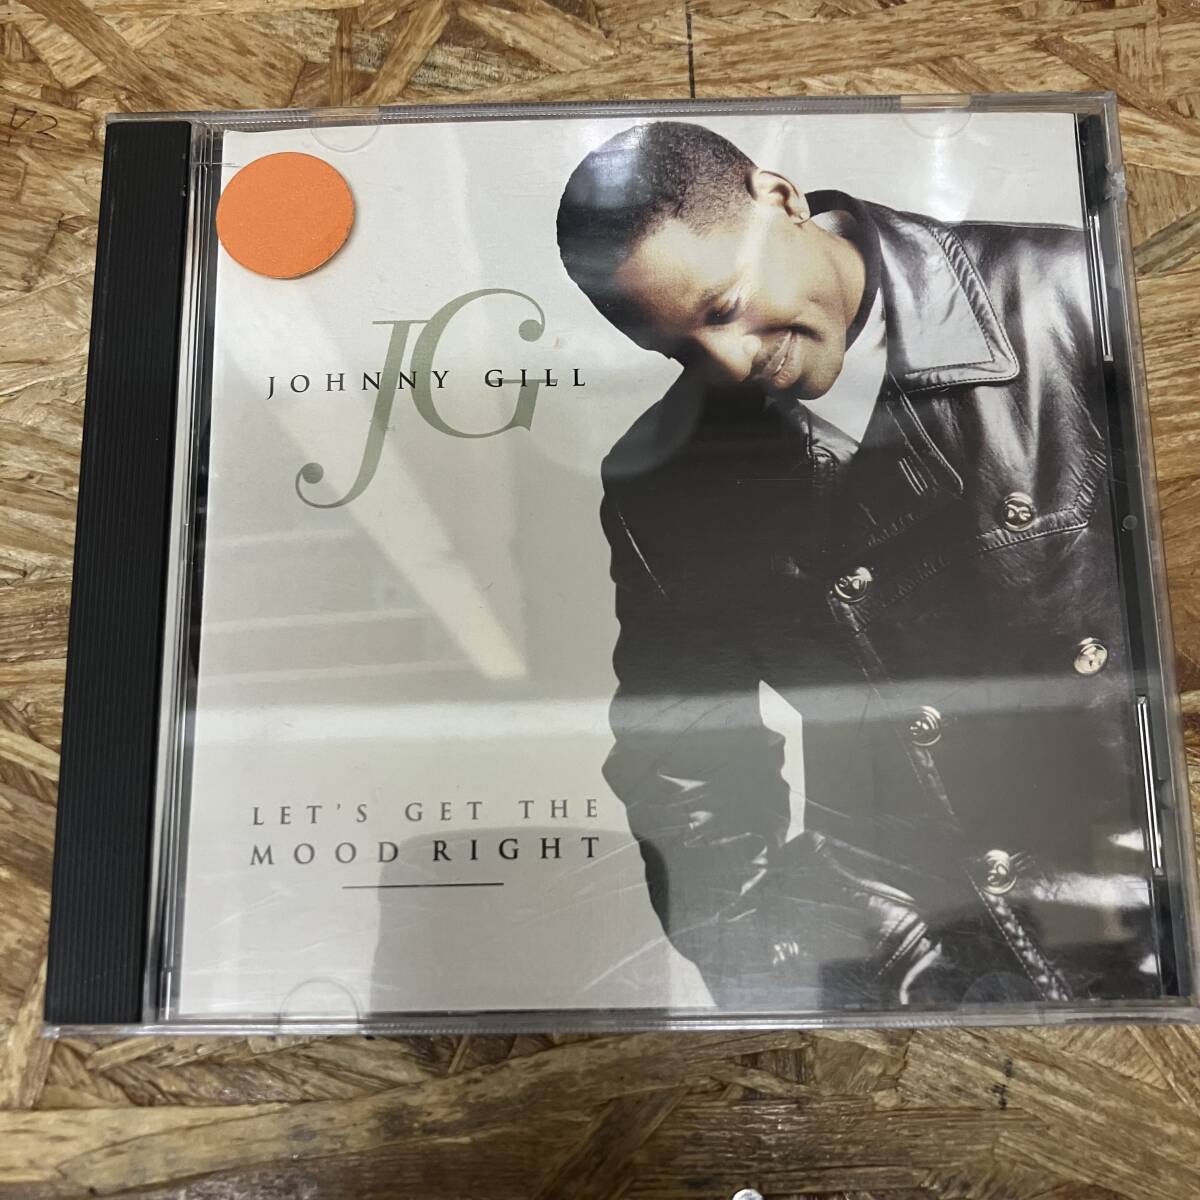 シ● HIPHOP,R&B JOHNNY GILL - LET'S GET THE MOOD RIGHT INST,シングル,PROMO盤 CD 中古品の画像1